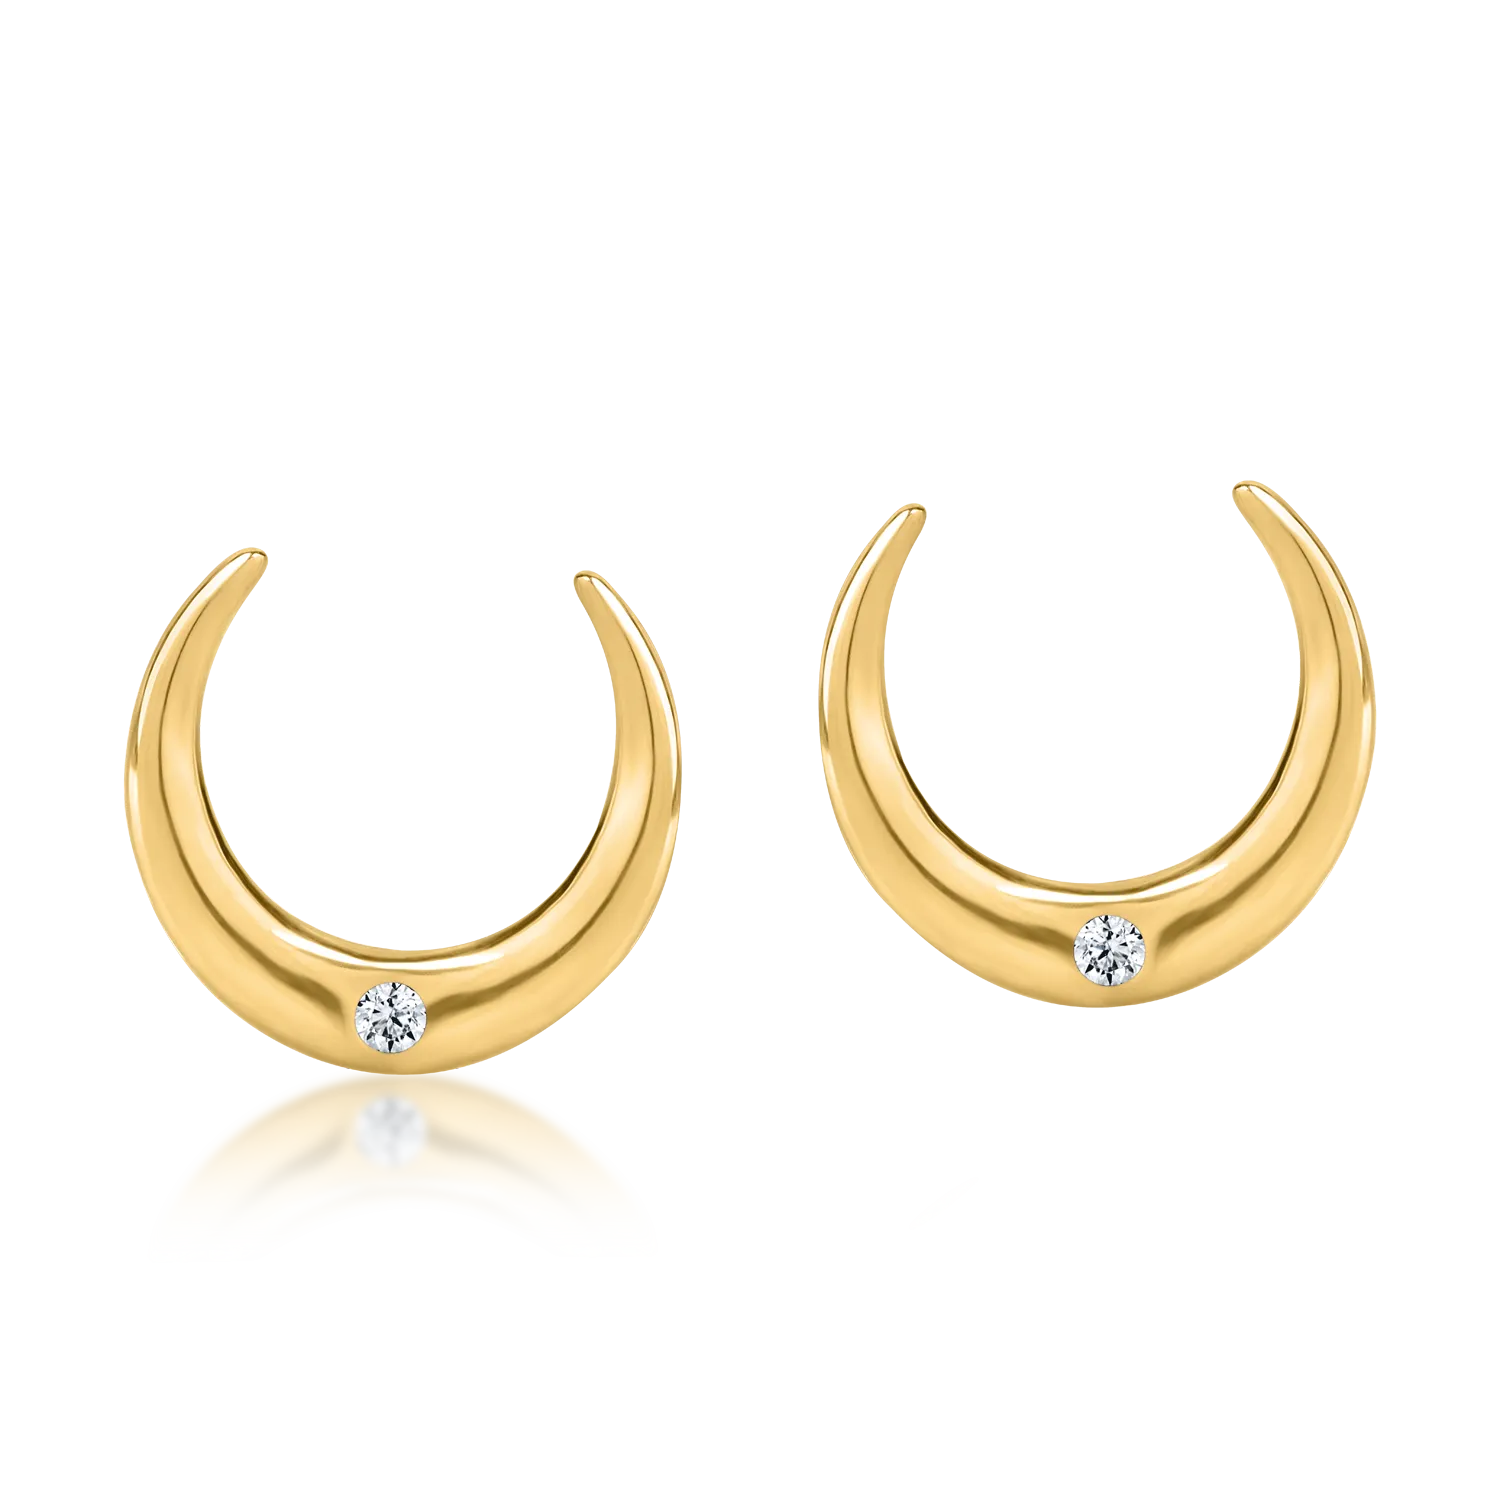 Yellow gold half moon earrings with zirconia